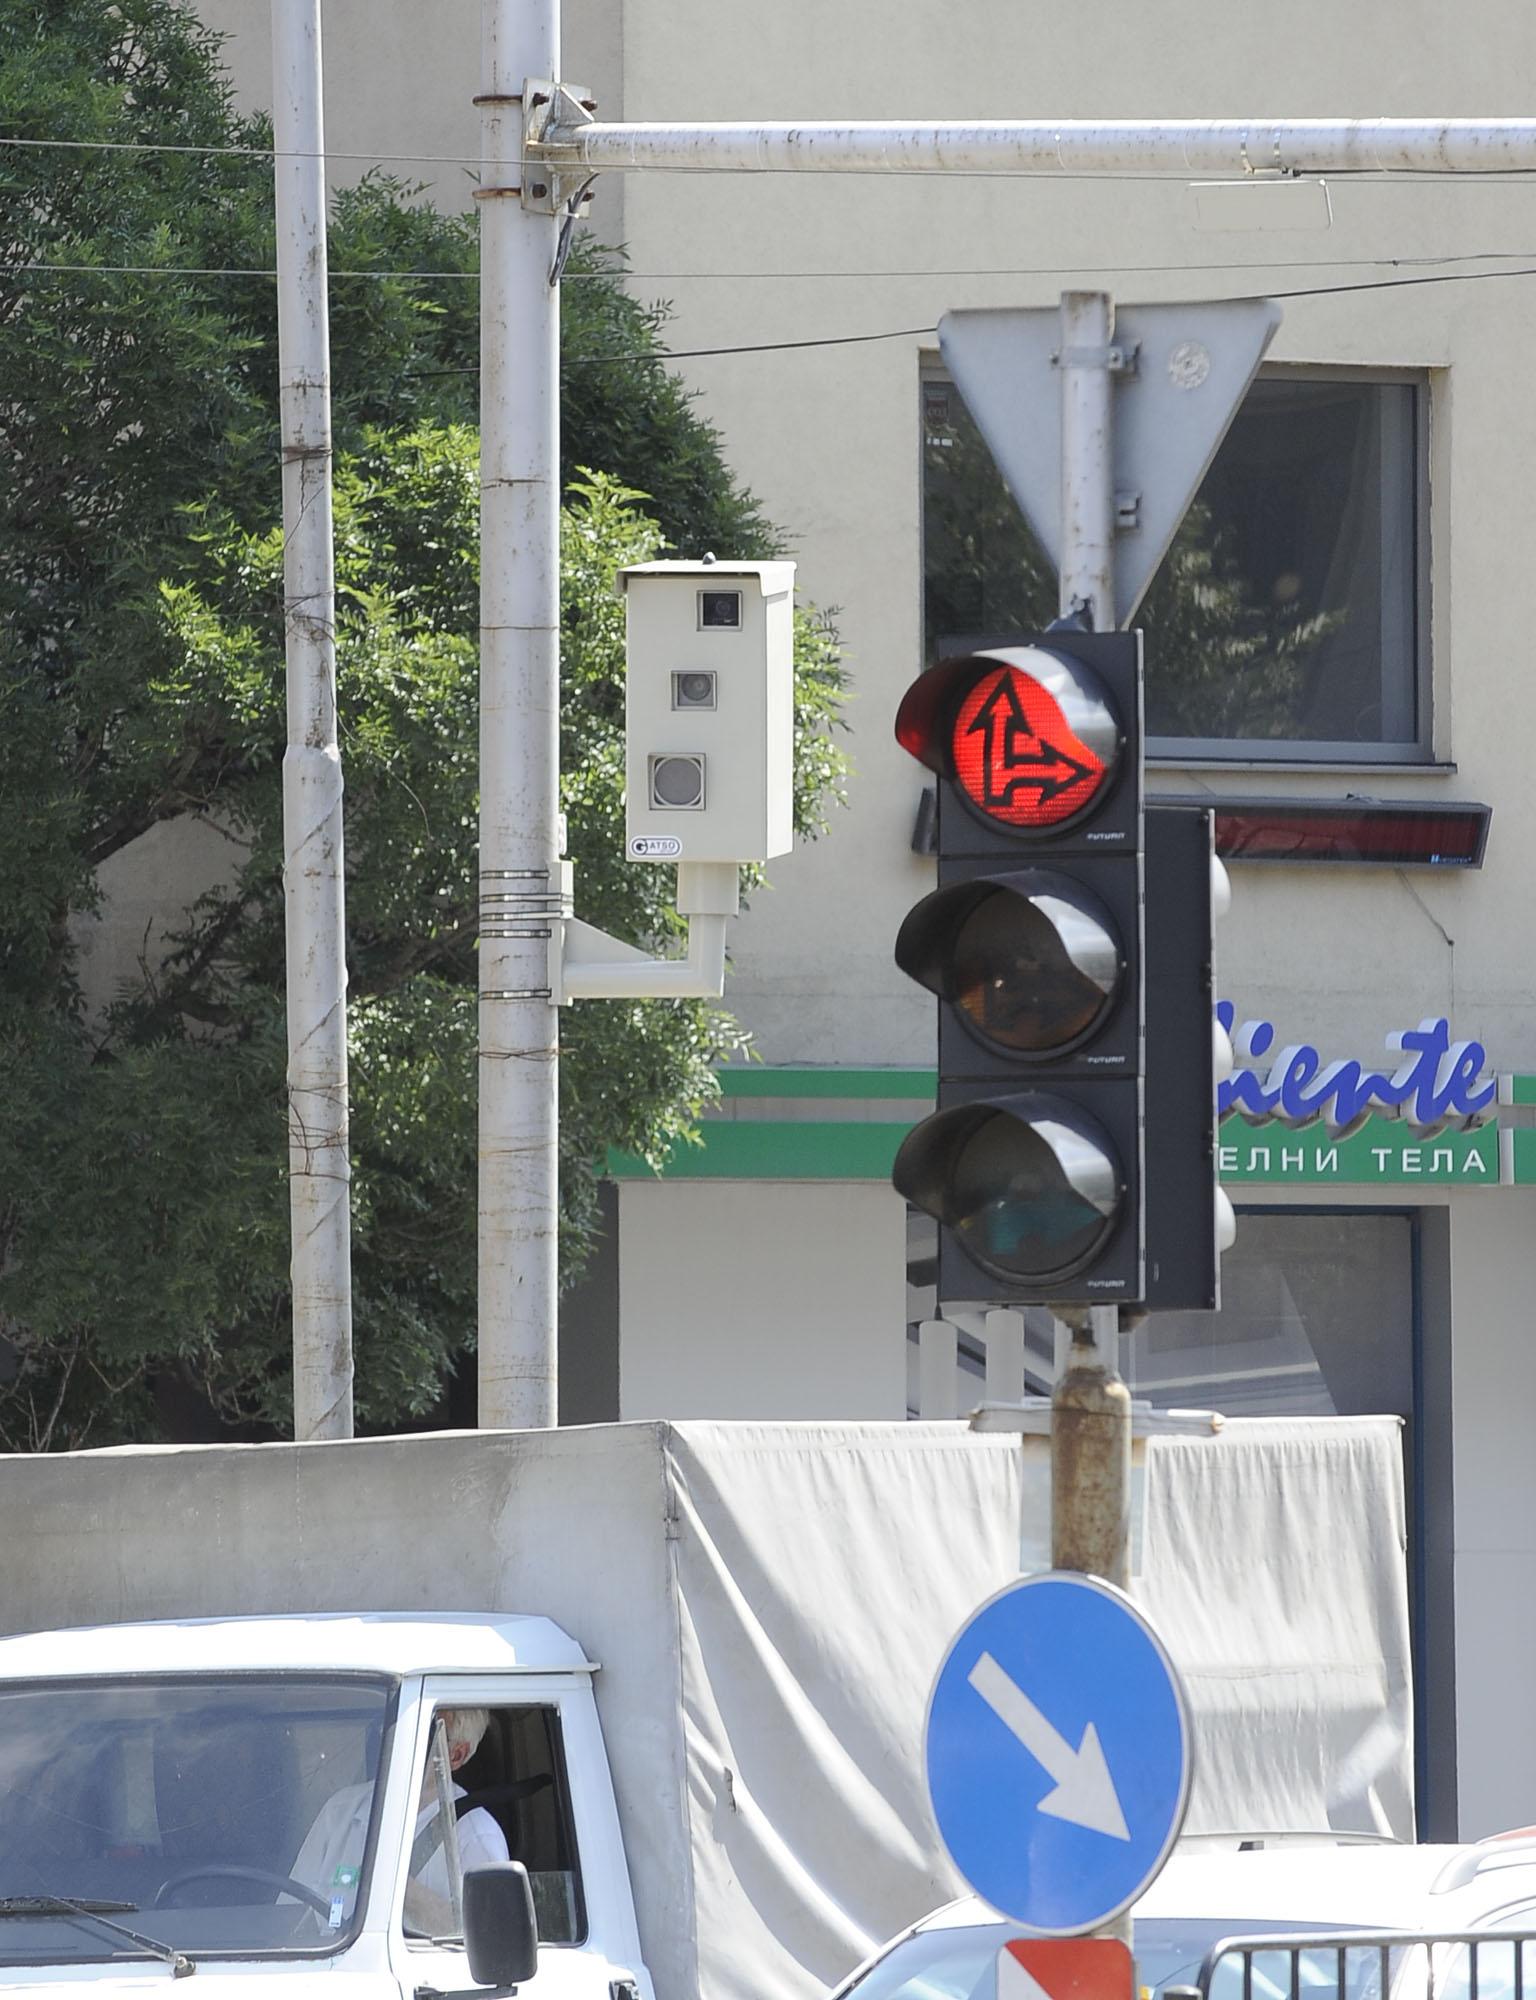 Камерите в София пак ще ловят за минаване на червено